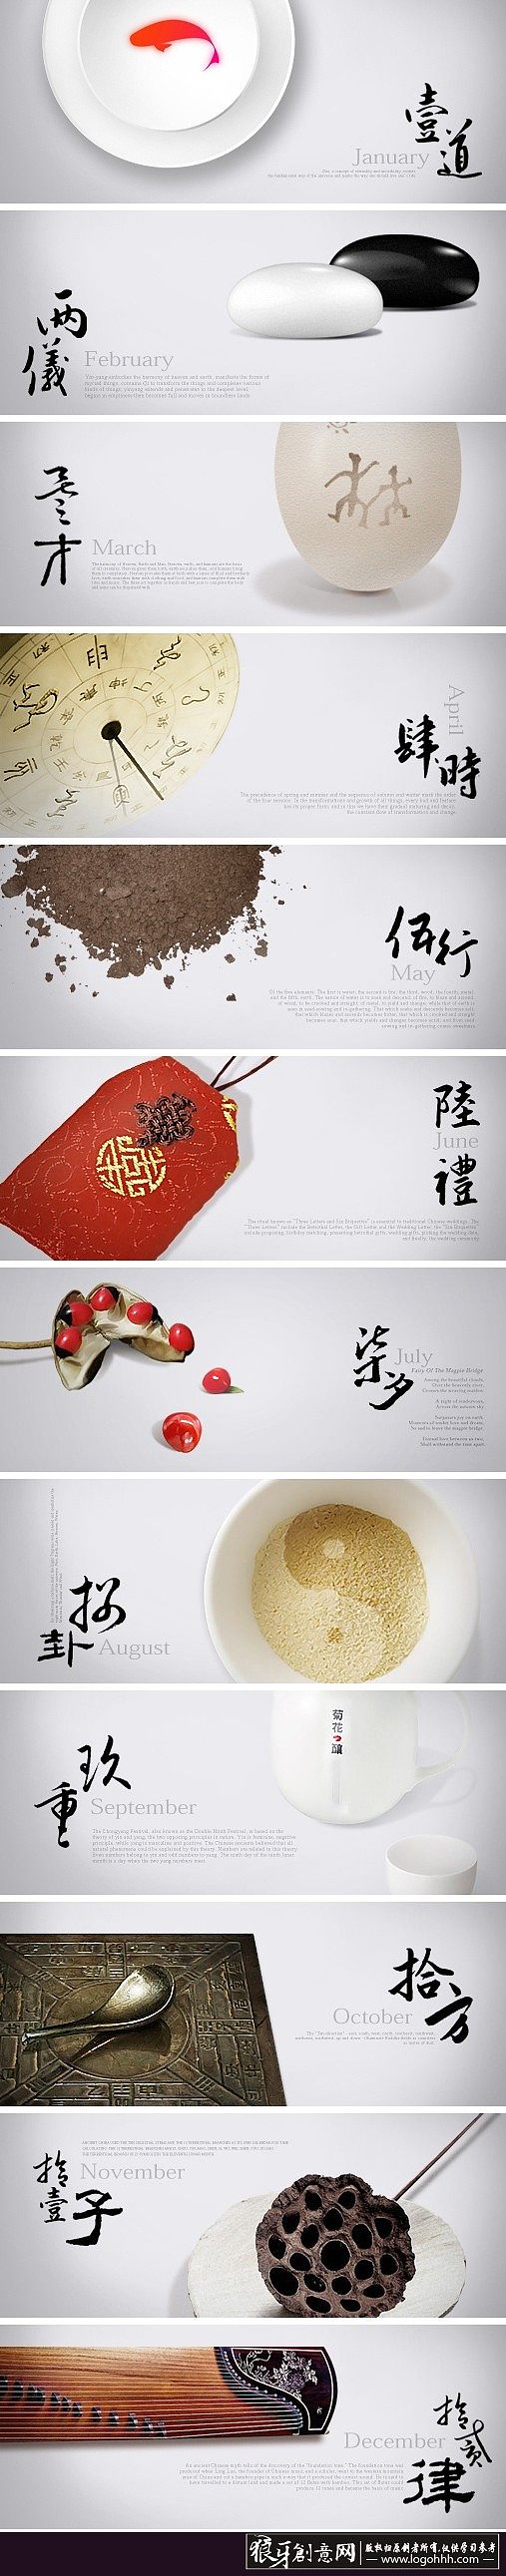 中国风排版设计 创意锦鲤紅鲤元素中国风b...